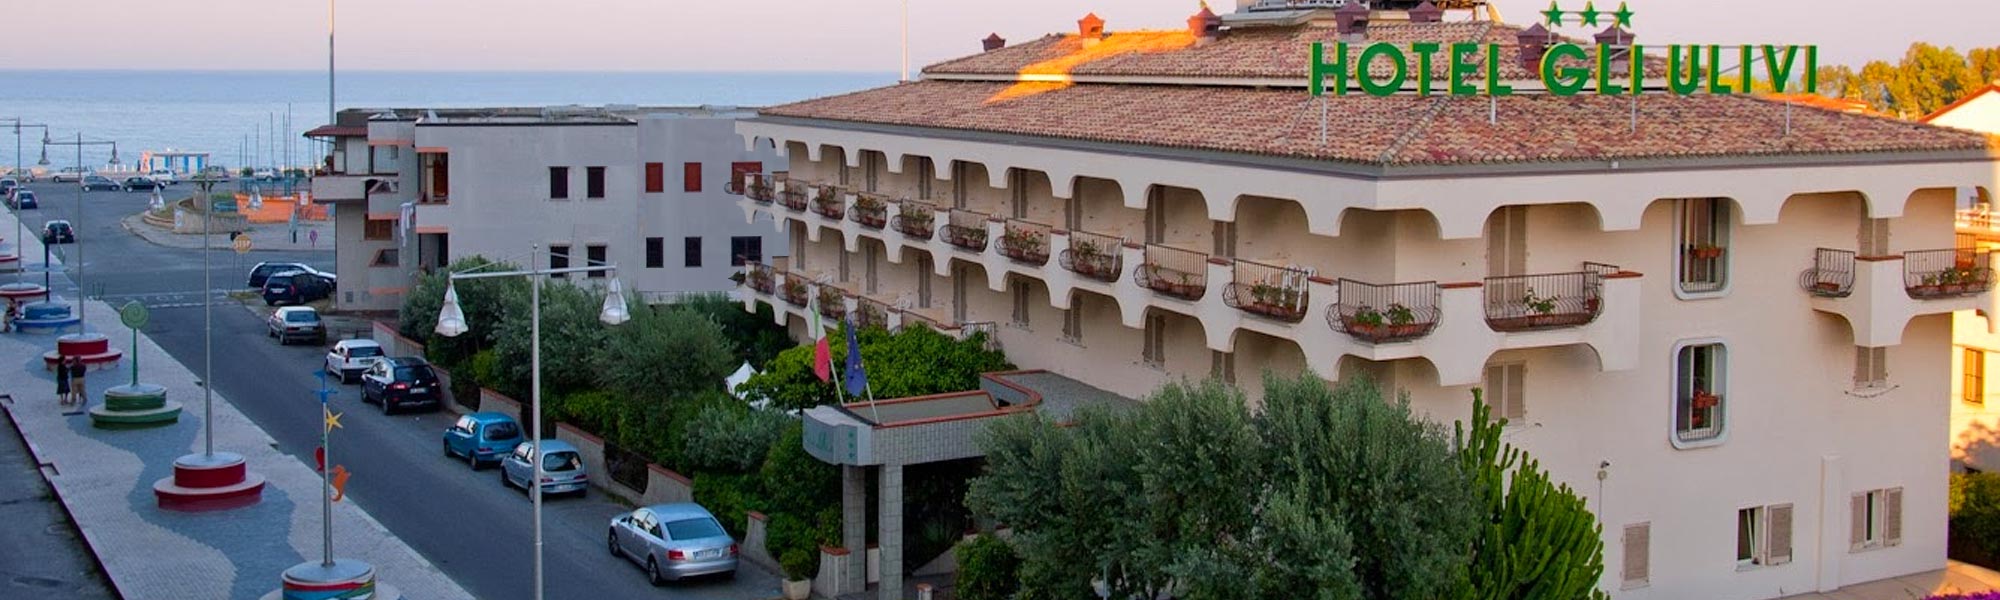 Hotel Gli Ulivi Soverato, Italien